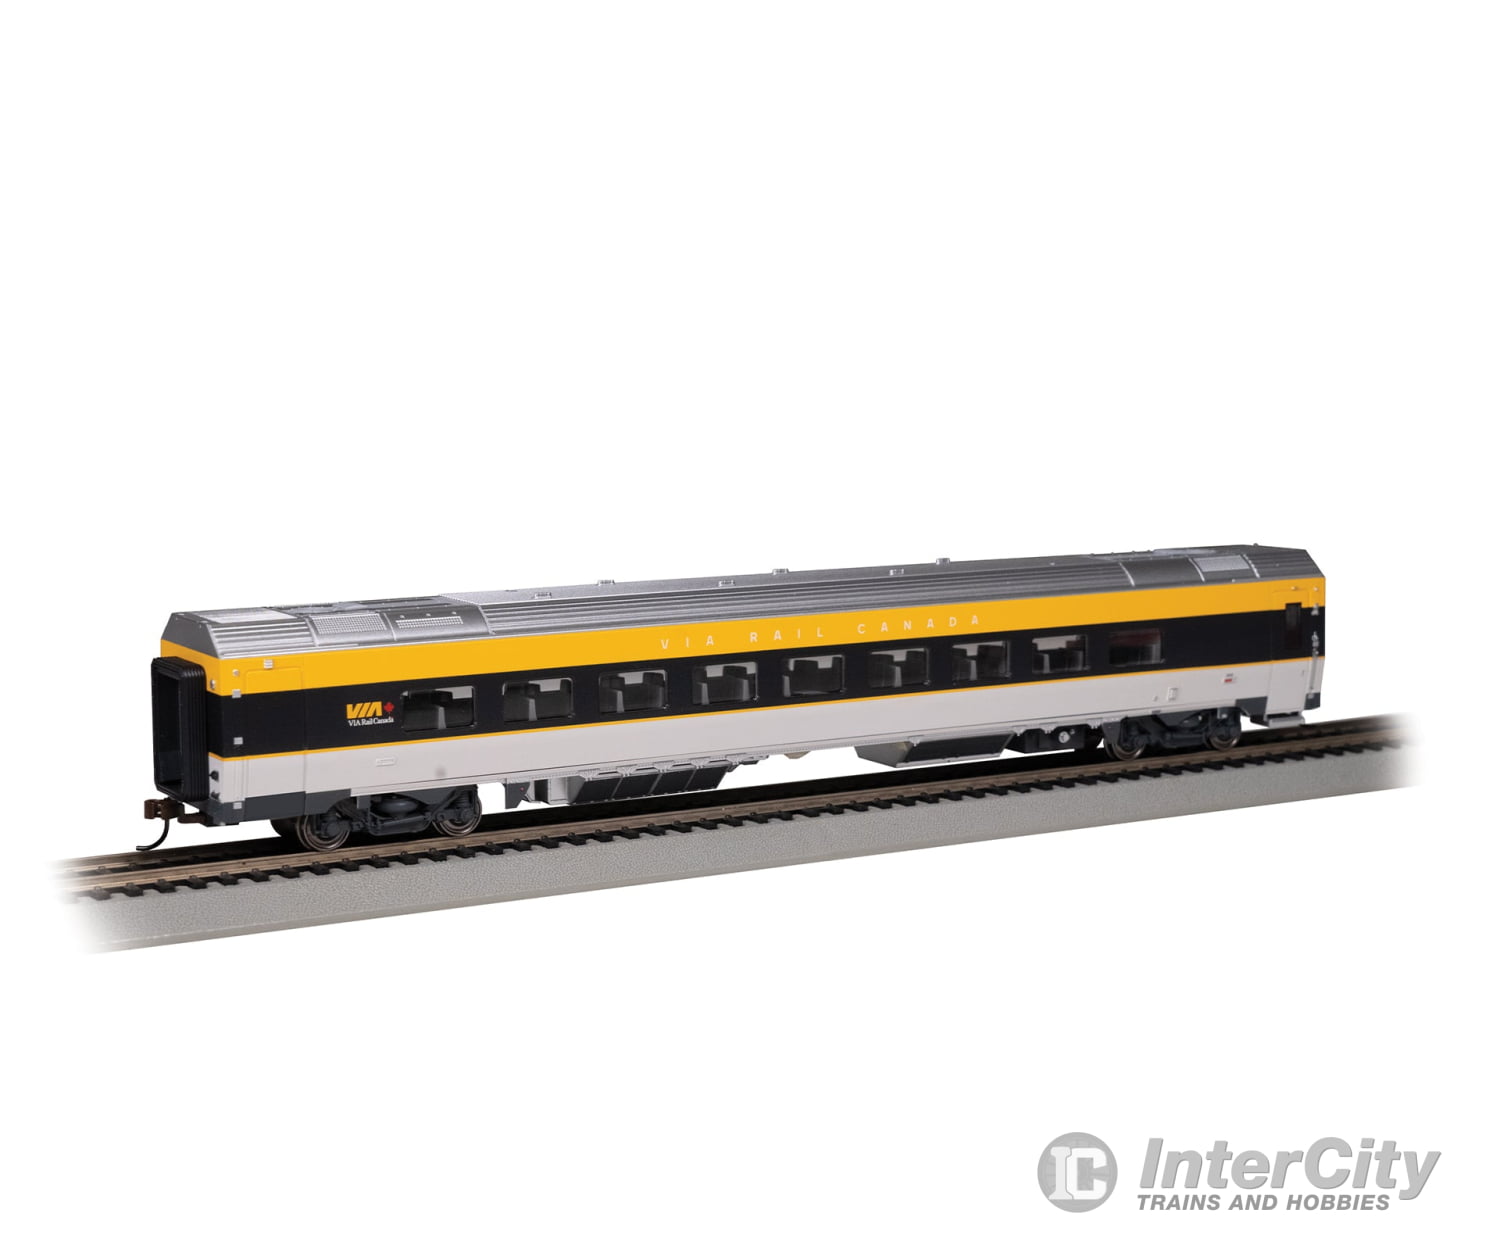 Bachmann 74506 Siemens Venture Coach - Via Version Ready To Run - - Rail Canada #2900 (Gray Black